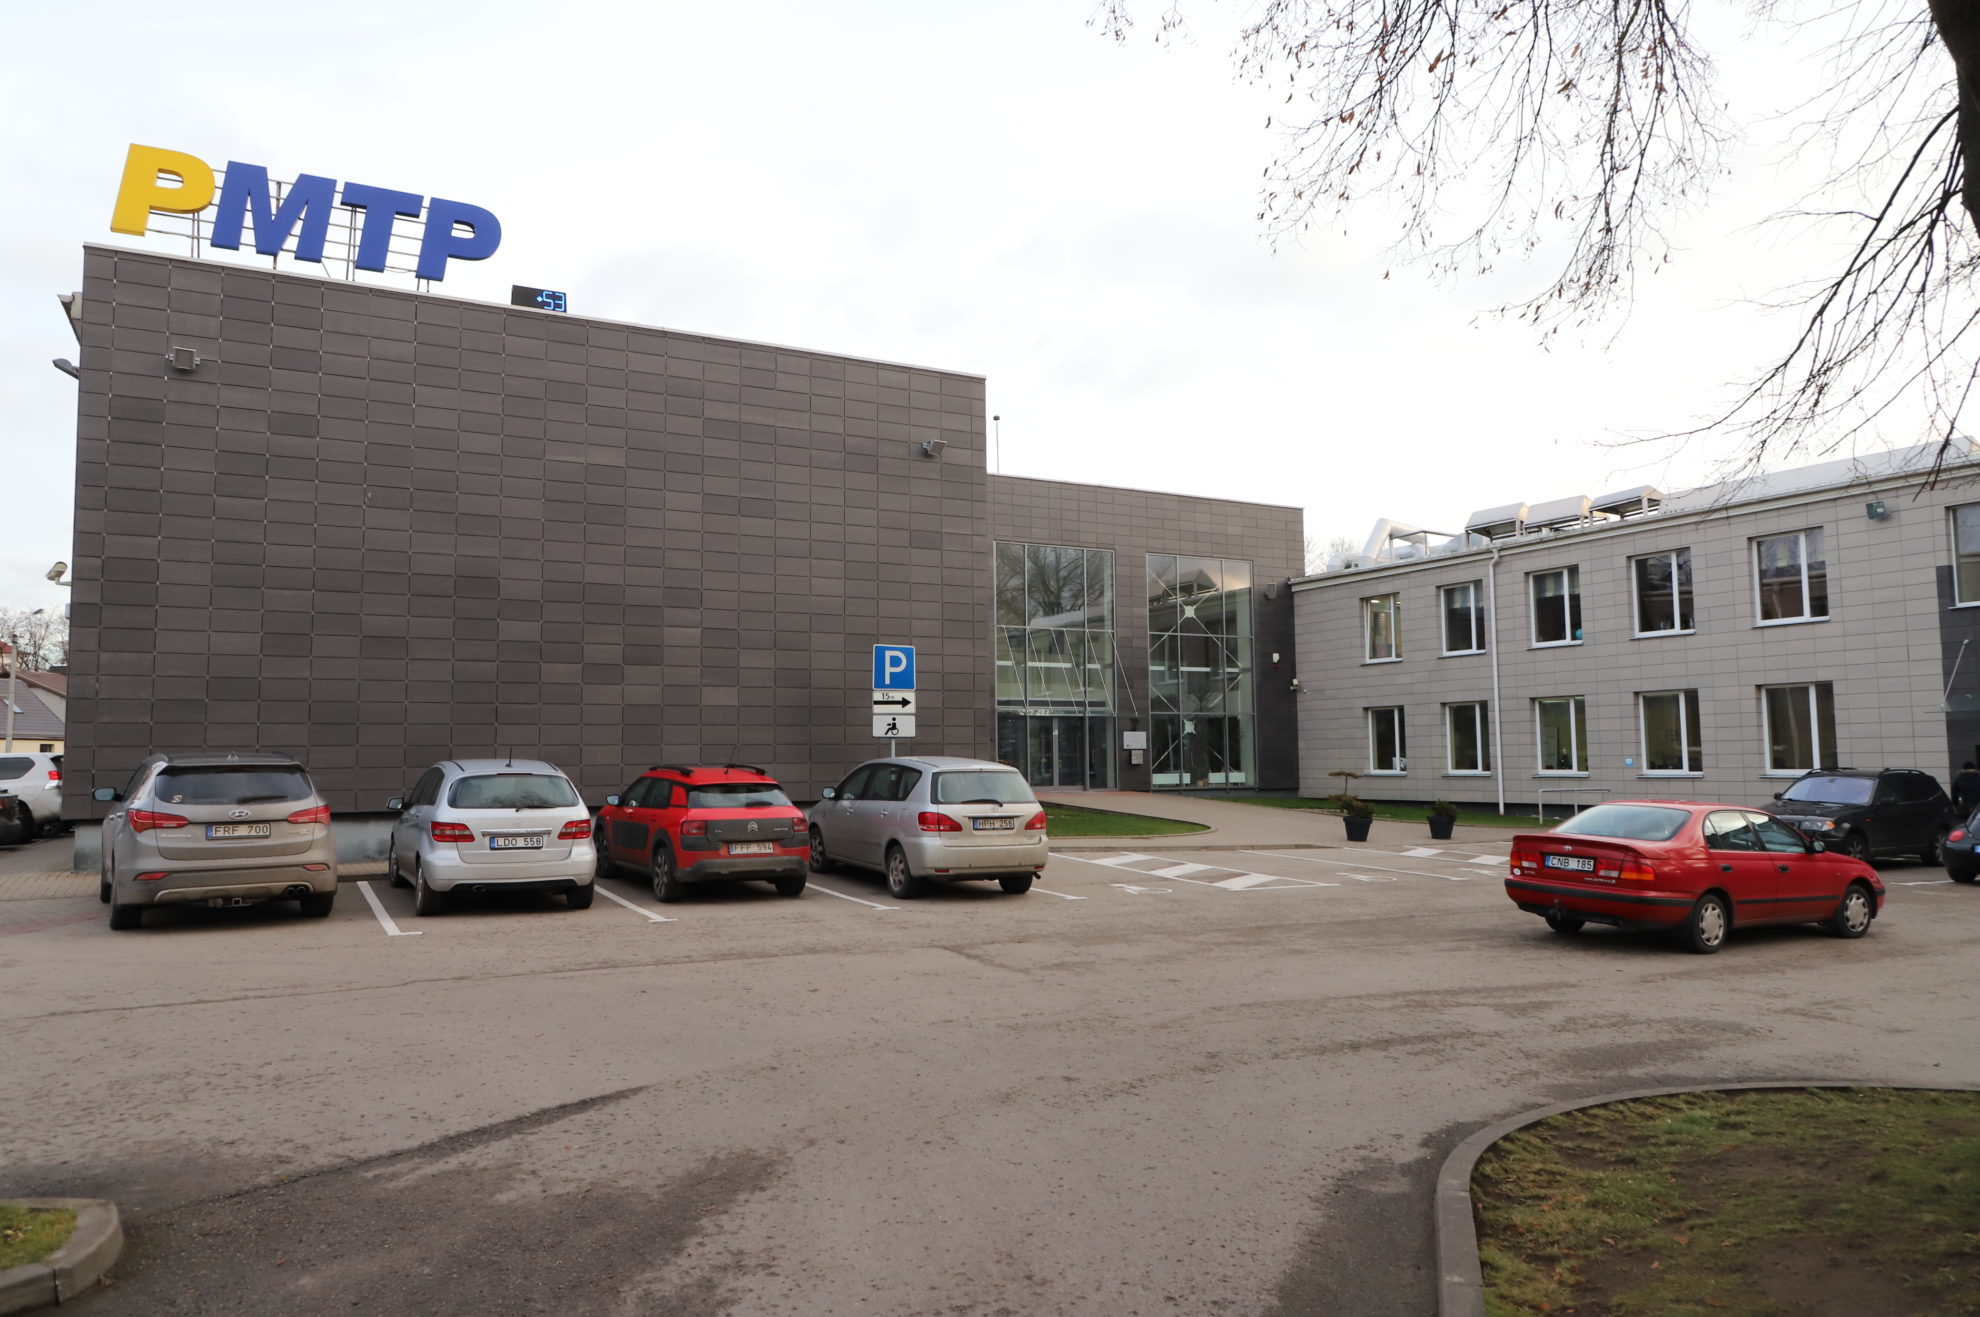 Šiandien vyko konkursas į Panevėžio mokslo ir technologijų parko (MTP) direktoriaus pareigas.